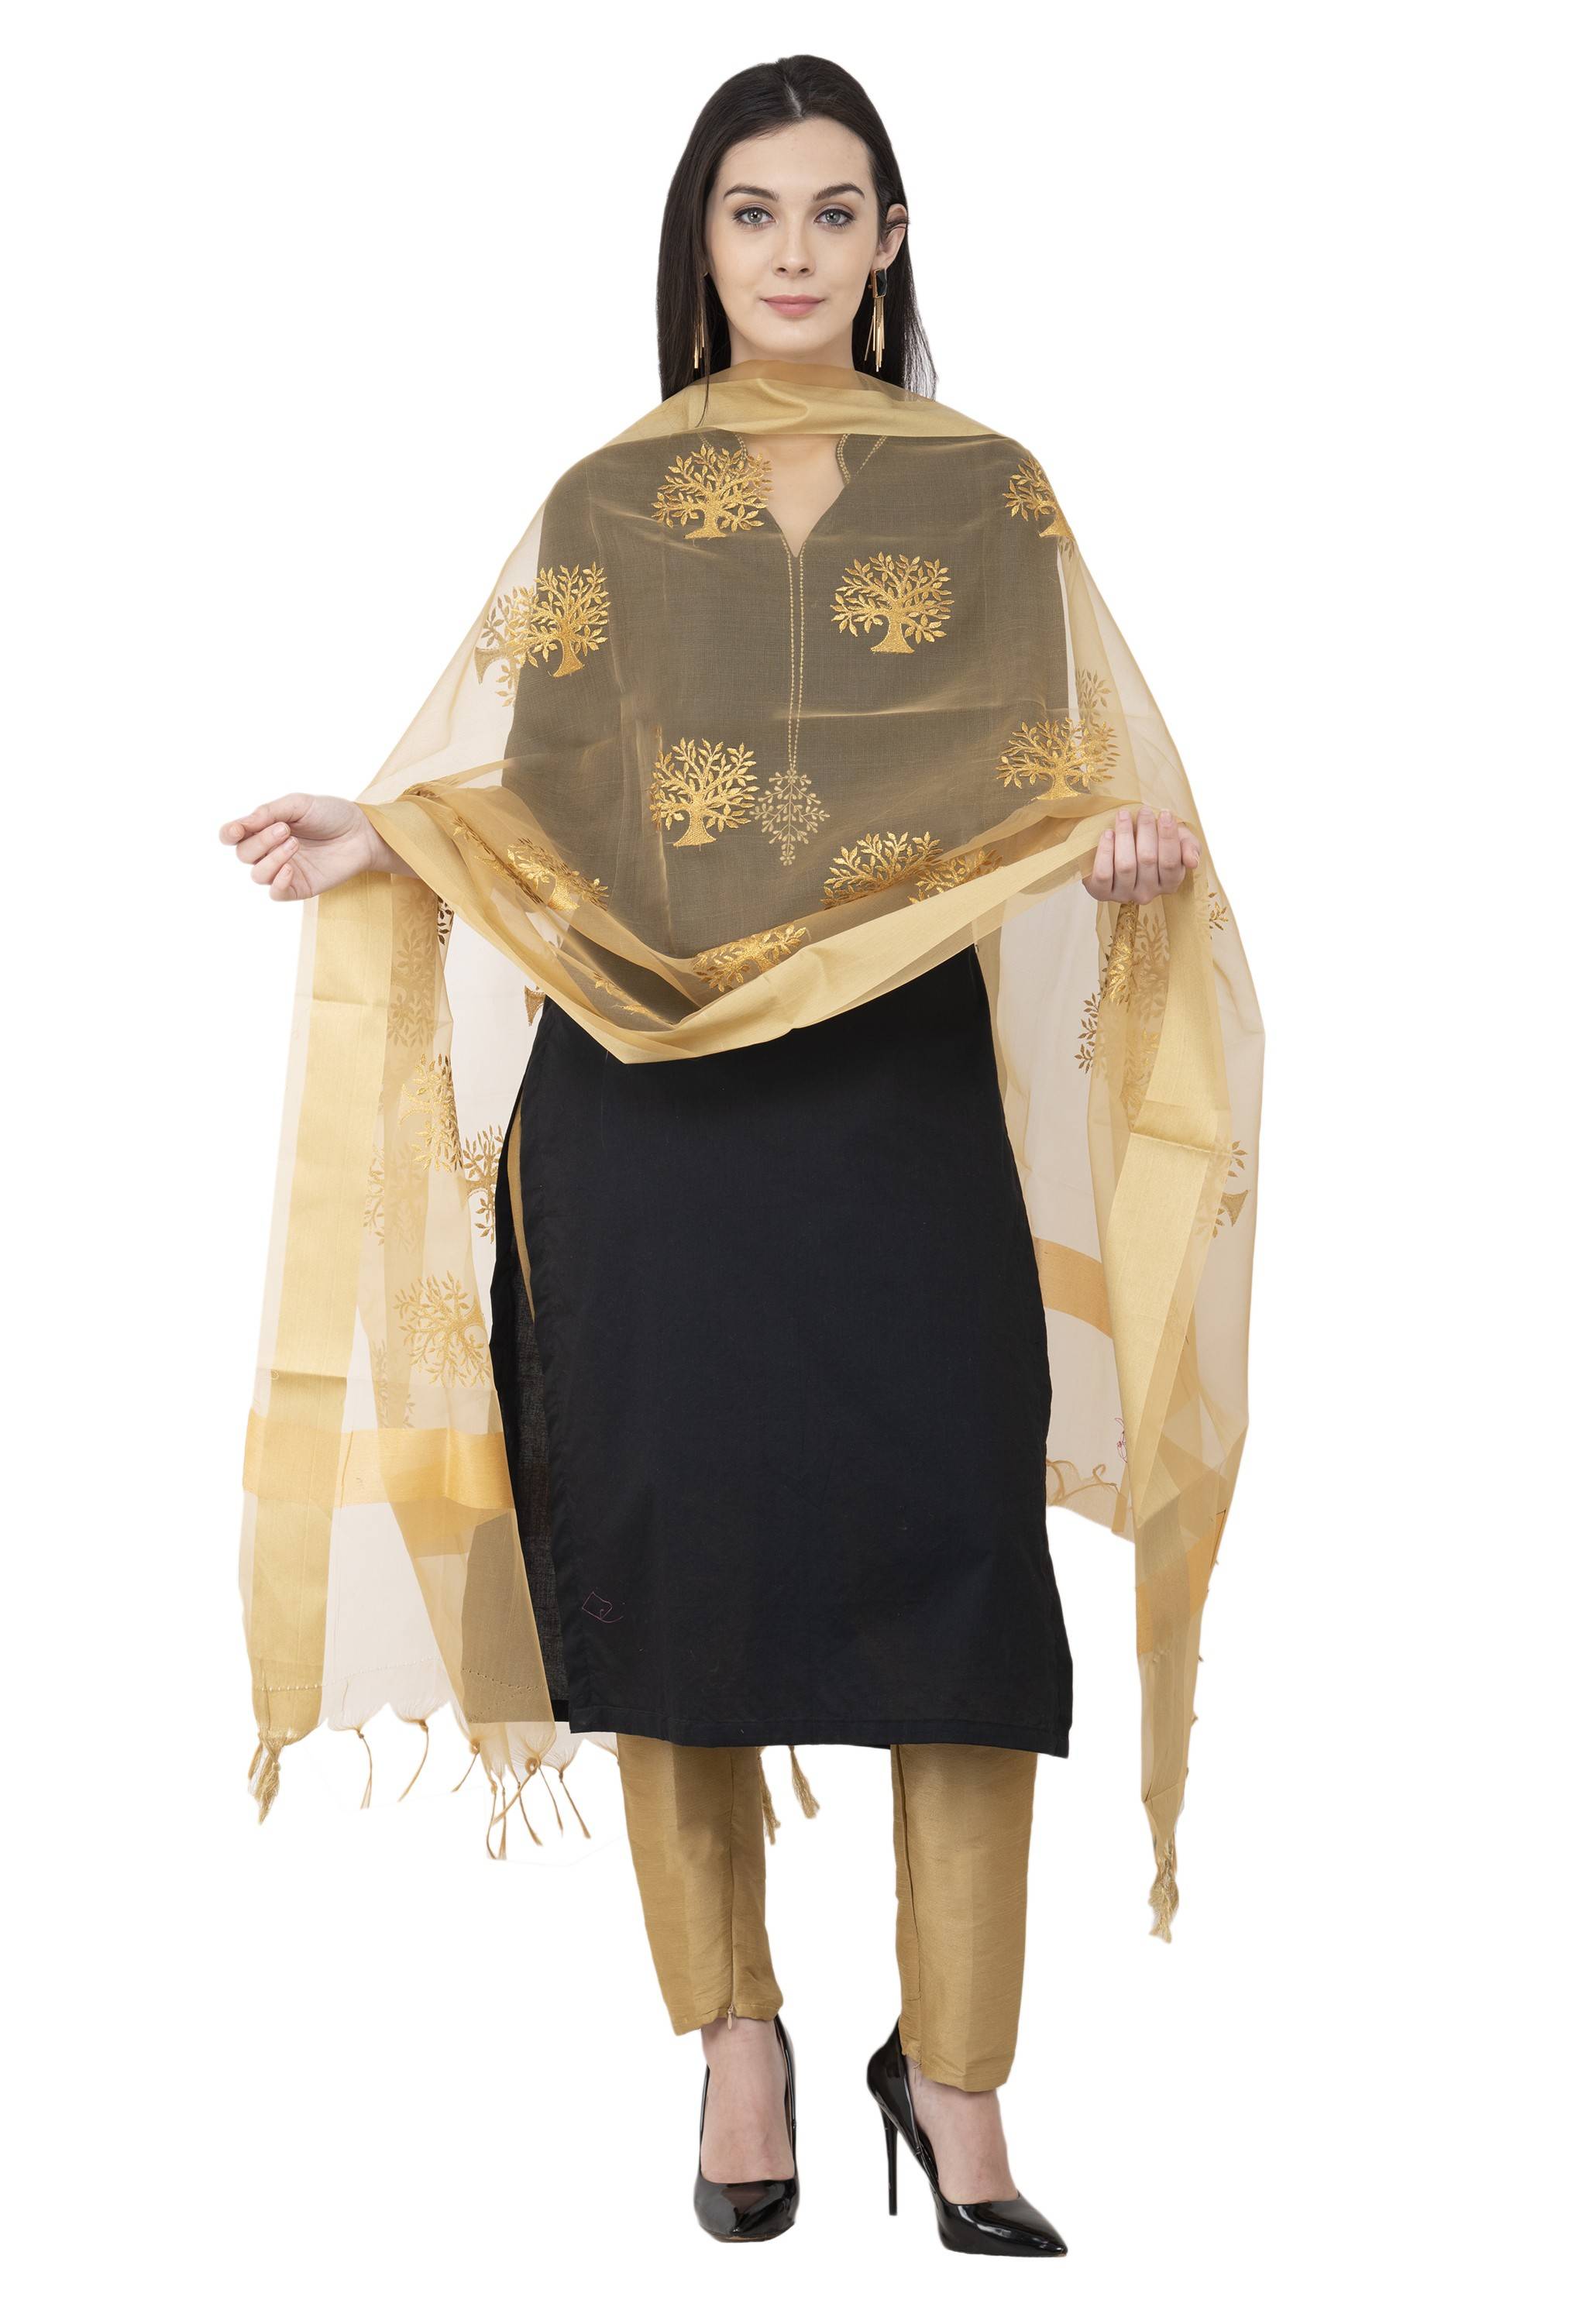 A R SILK Tissue Zari Embroidery Golden Zari Embroidery Golden Color Dupatta or Chunni